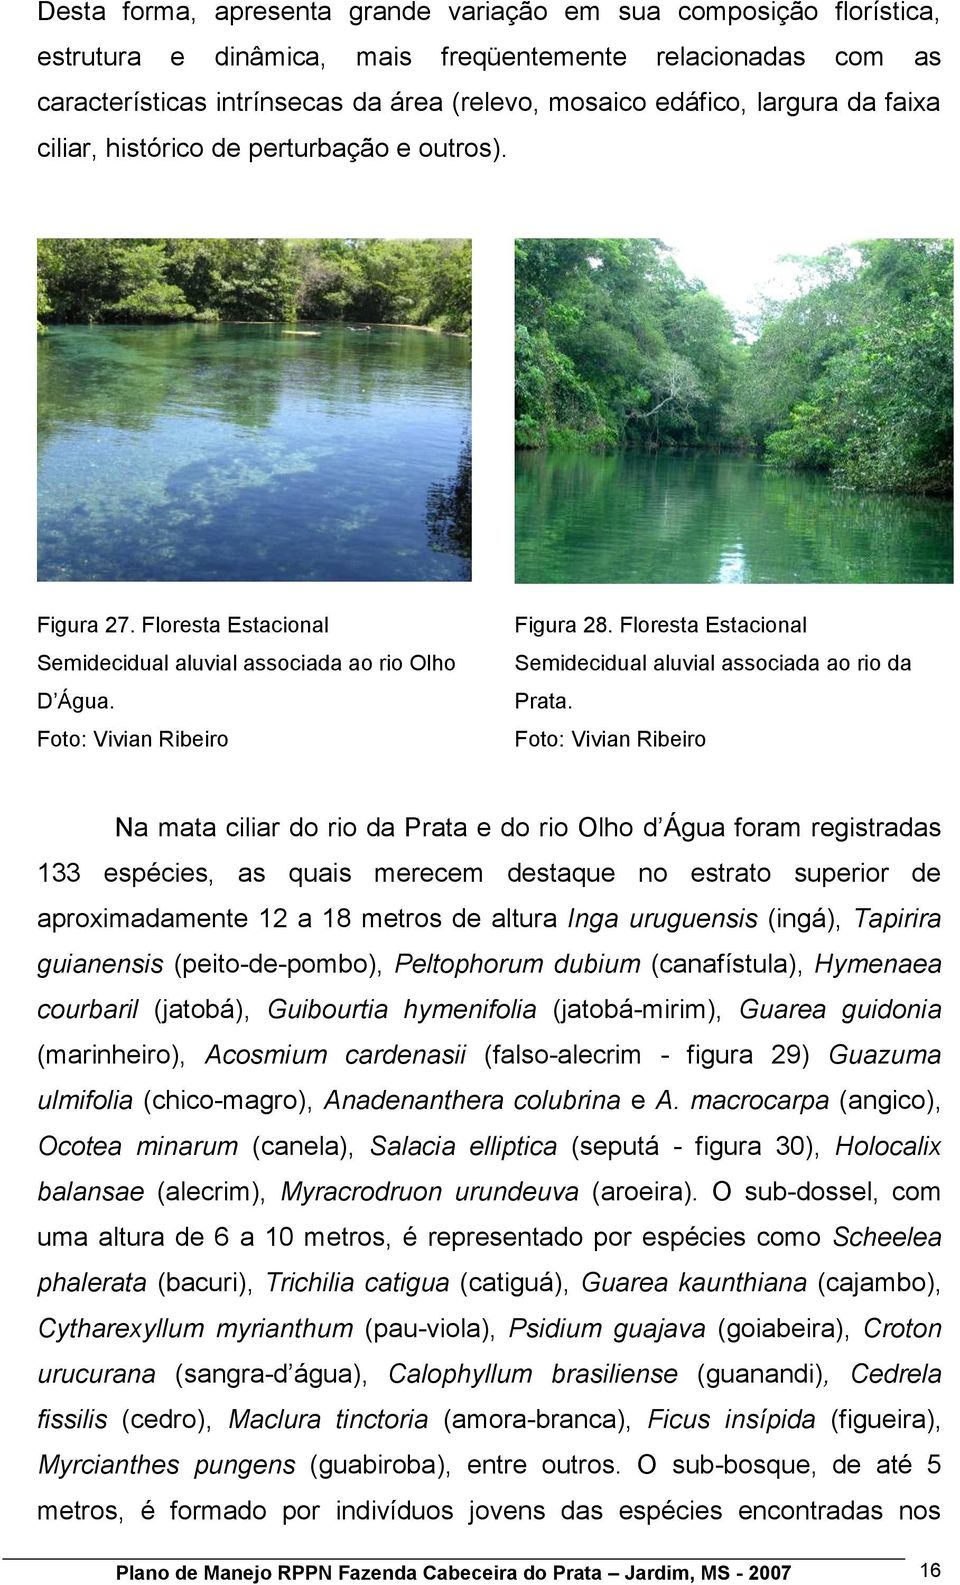 Floresta Estacional Semidecidual aluvial associada ao rio da Prata.